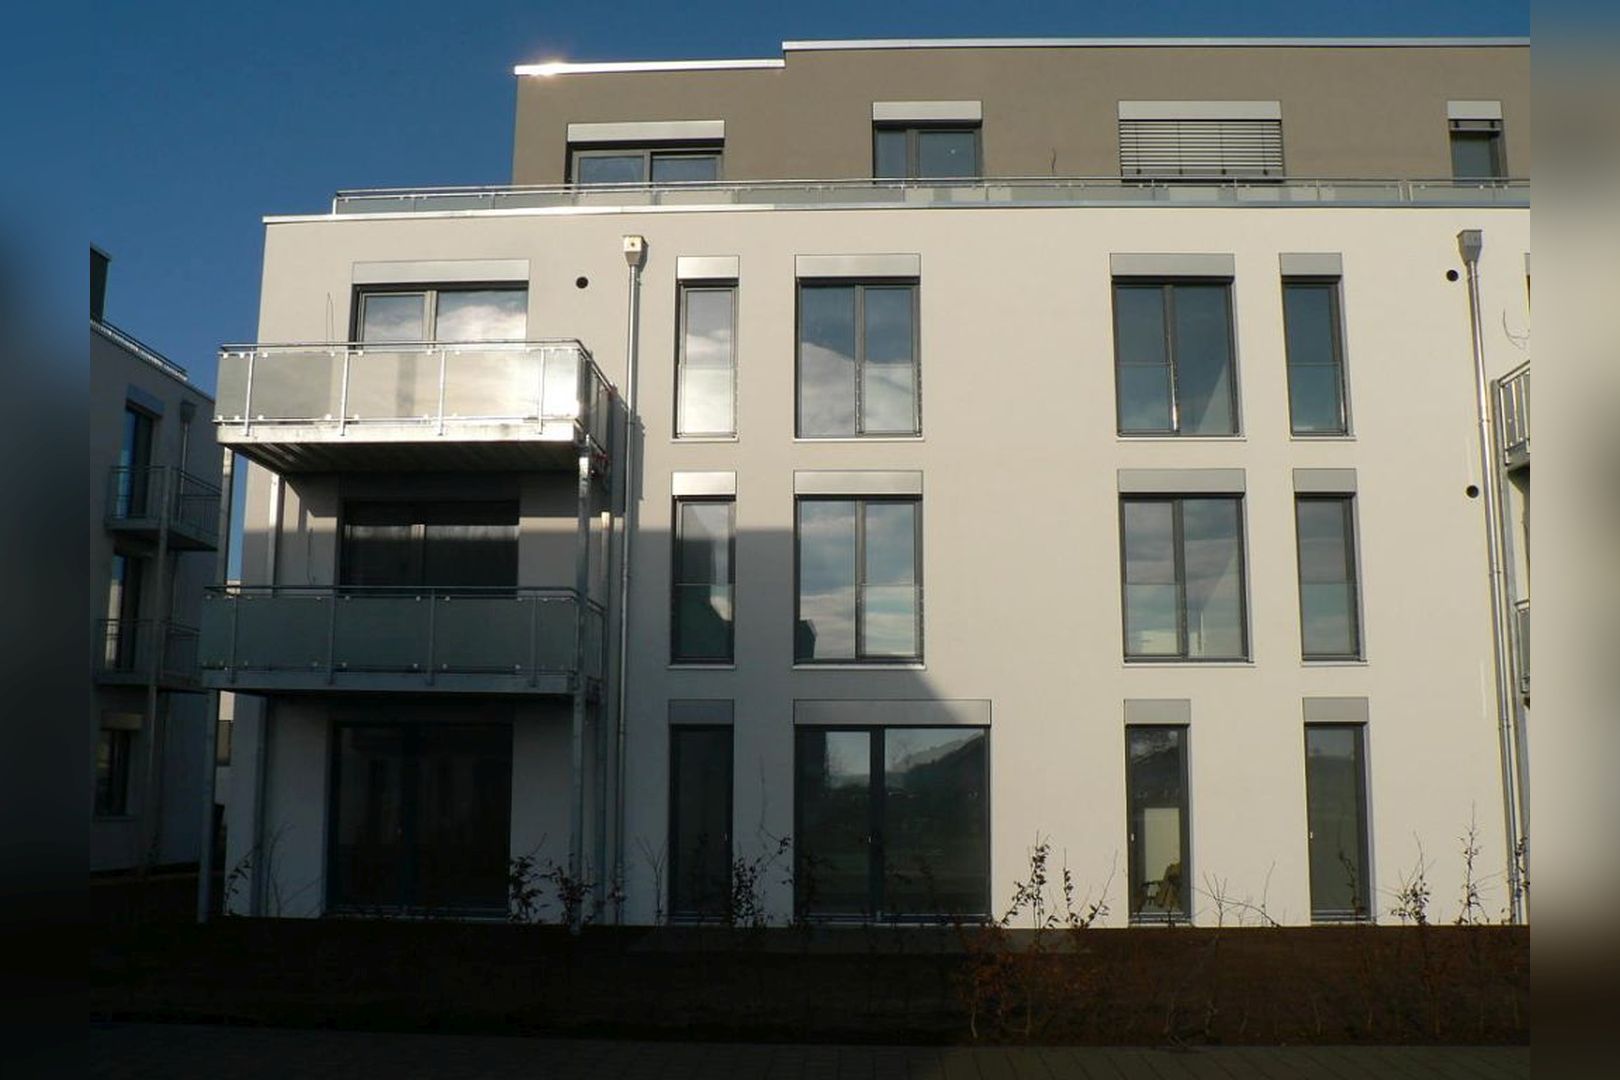 Immobilie Nr.Köln 100 - evohaus-Energie-autarkes-Wohnquartier: Einfamilienhäuser in Reihe und Eigentumswohnungen von 2 - 5 Zimmern in mehreren Häusern. Und das: weitestgehend Energie-autark und KfW-55-förderfähig!   - Bild 11.jpg